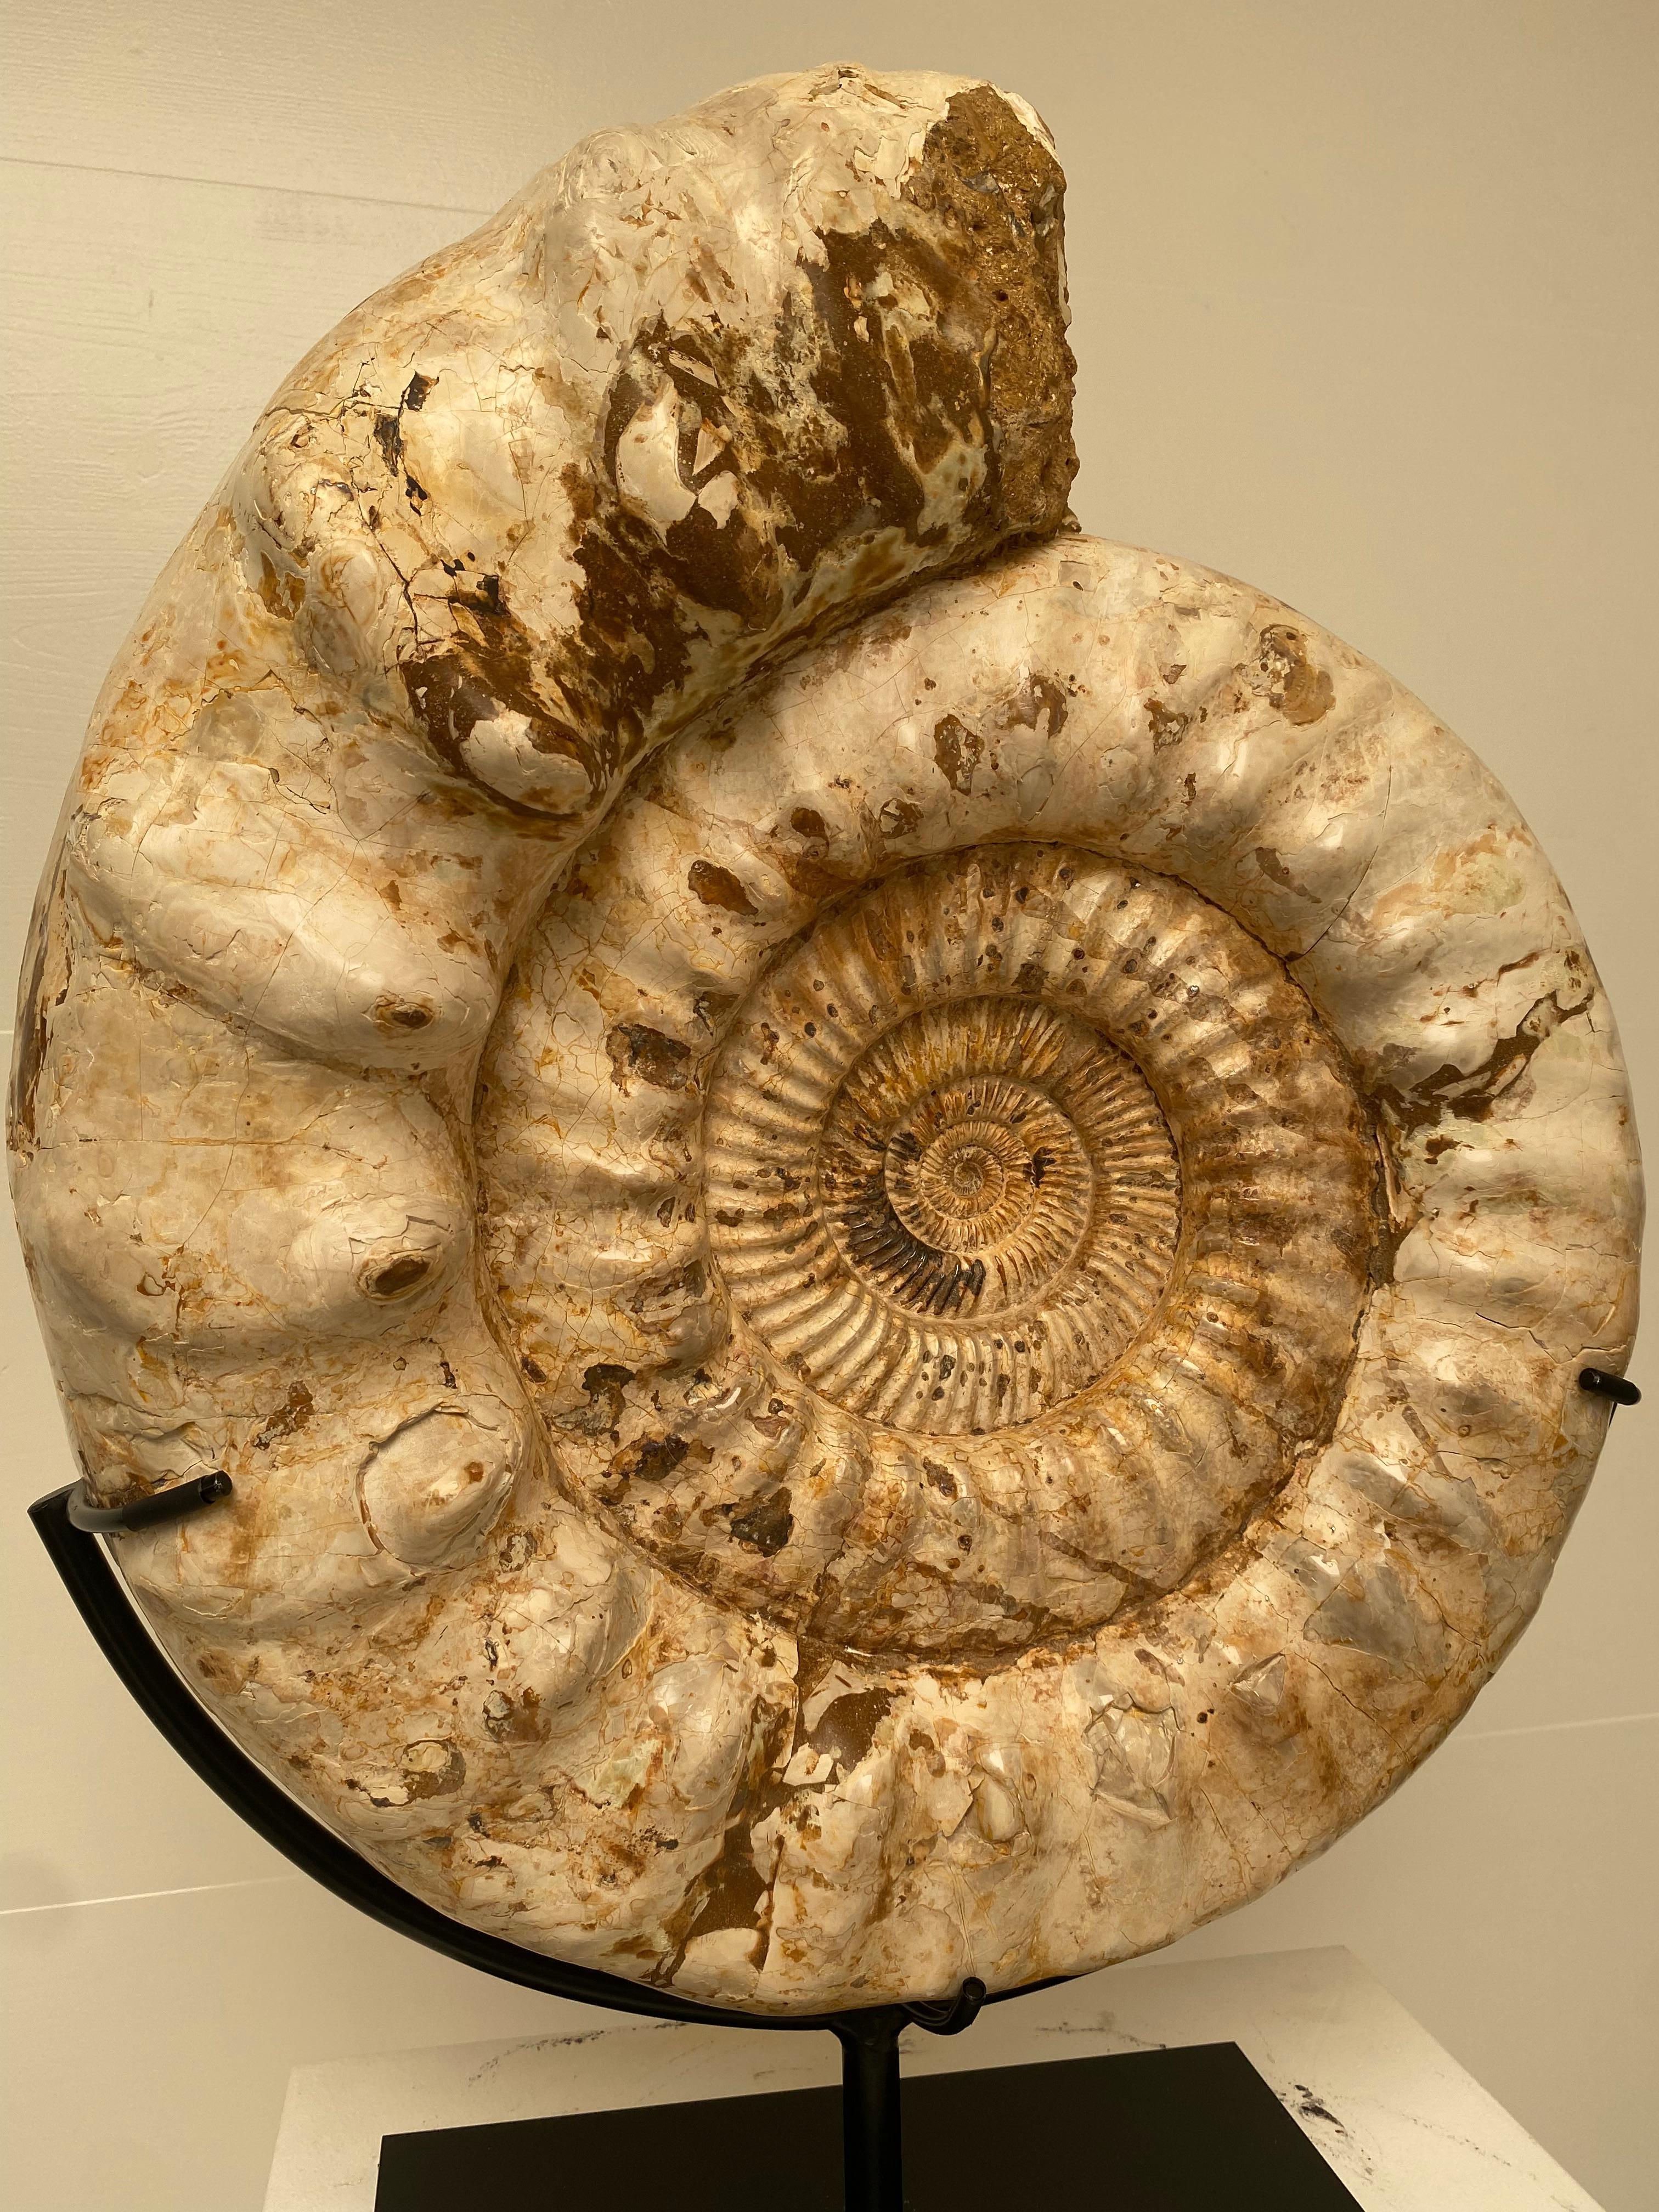 Malagasy Ammonite from Madagascar